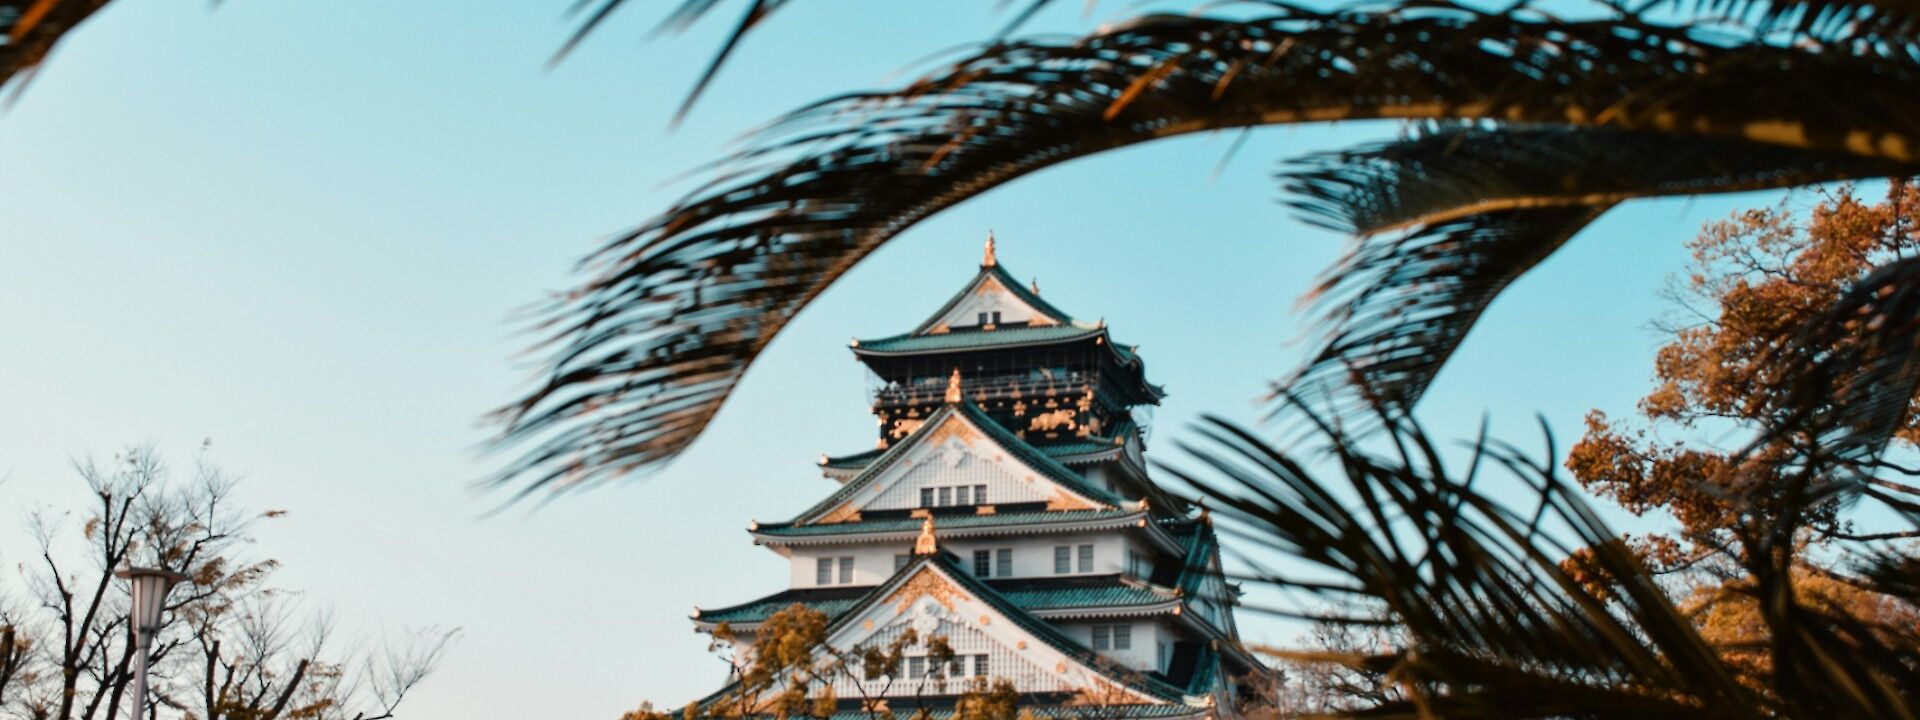 Osaka castle, Japan. Unsplash: Agathe